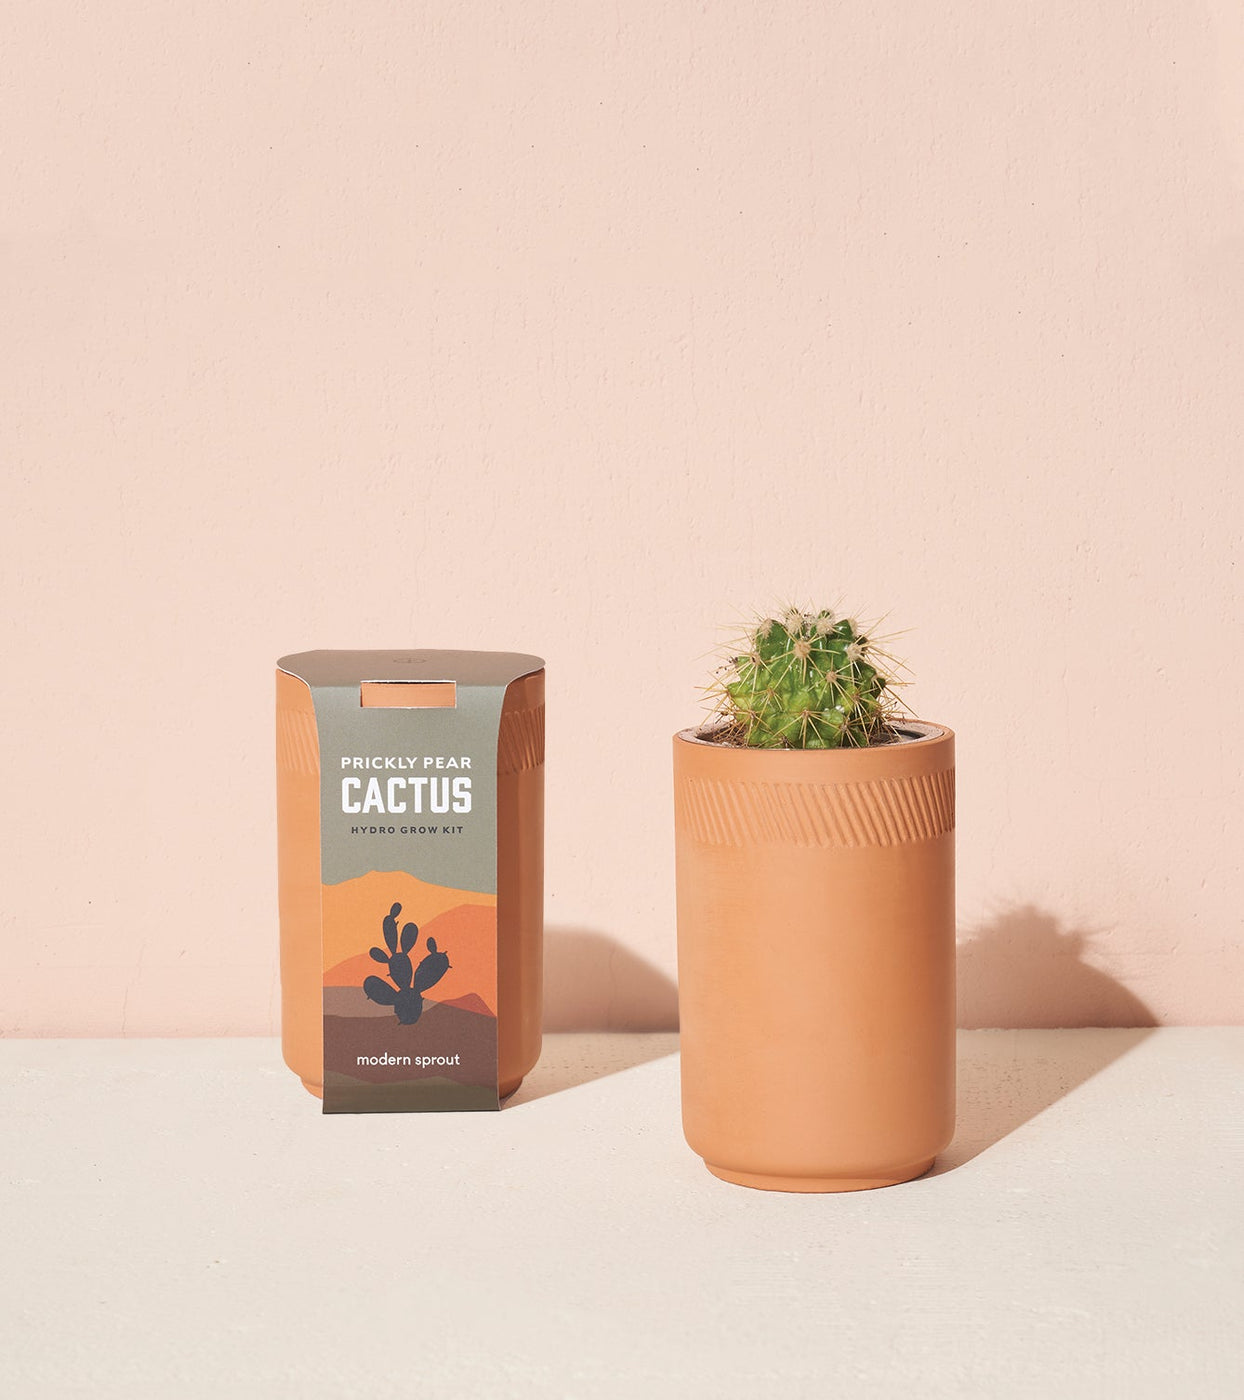 a cactus in a pot next to a box